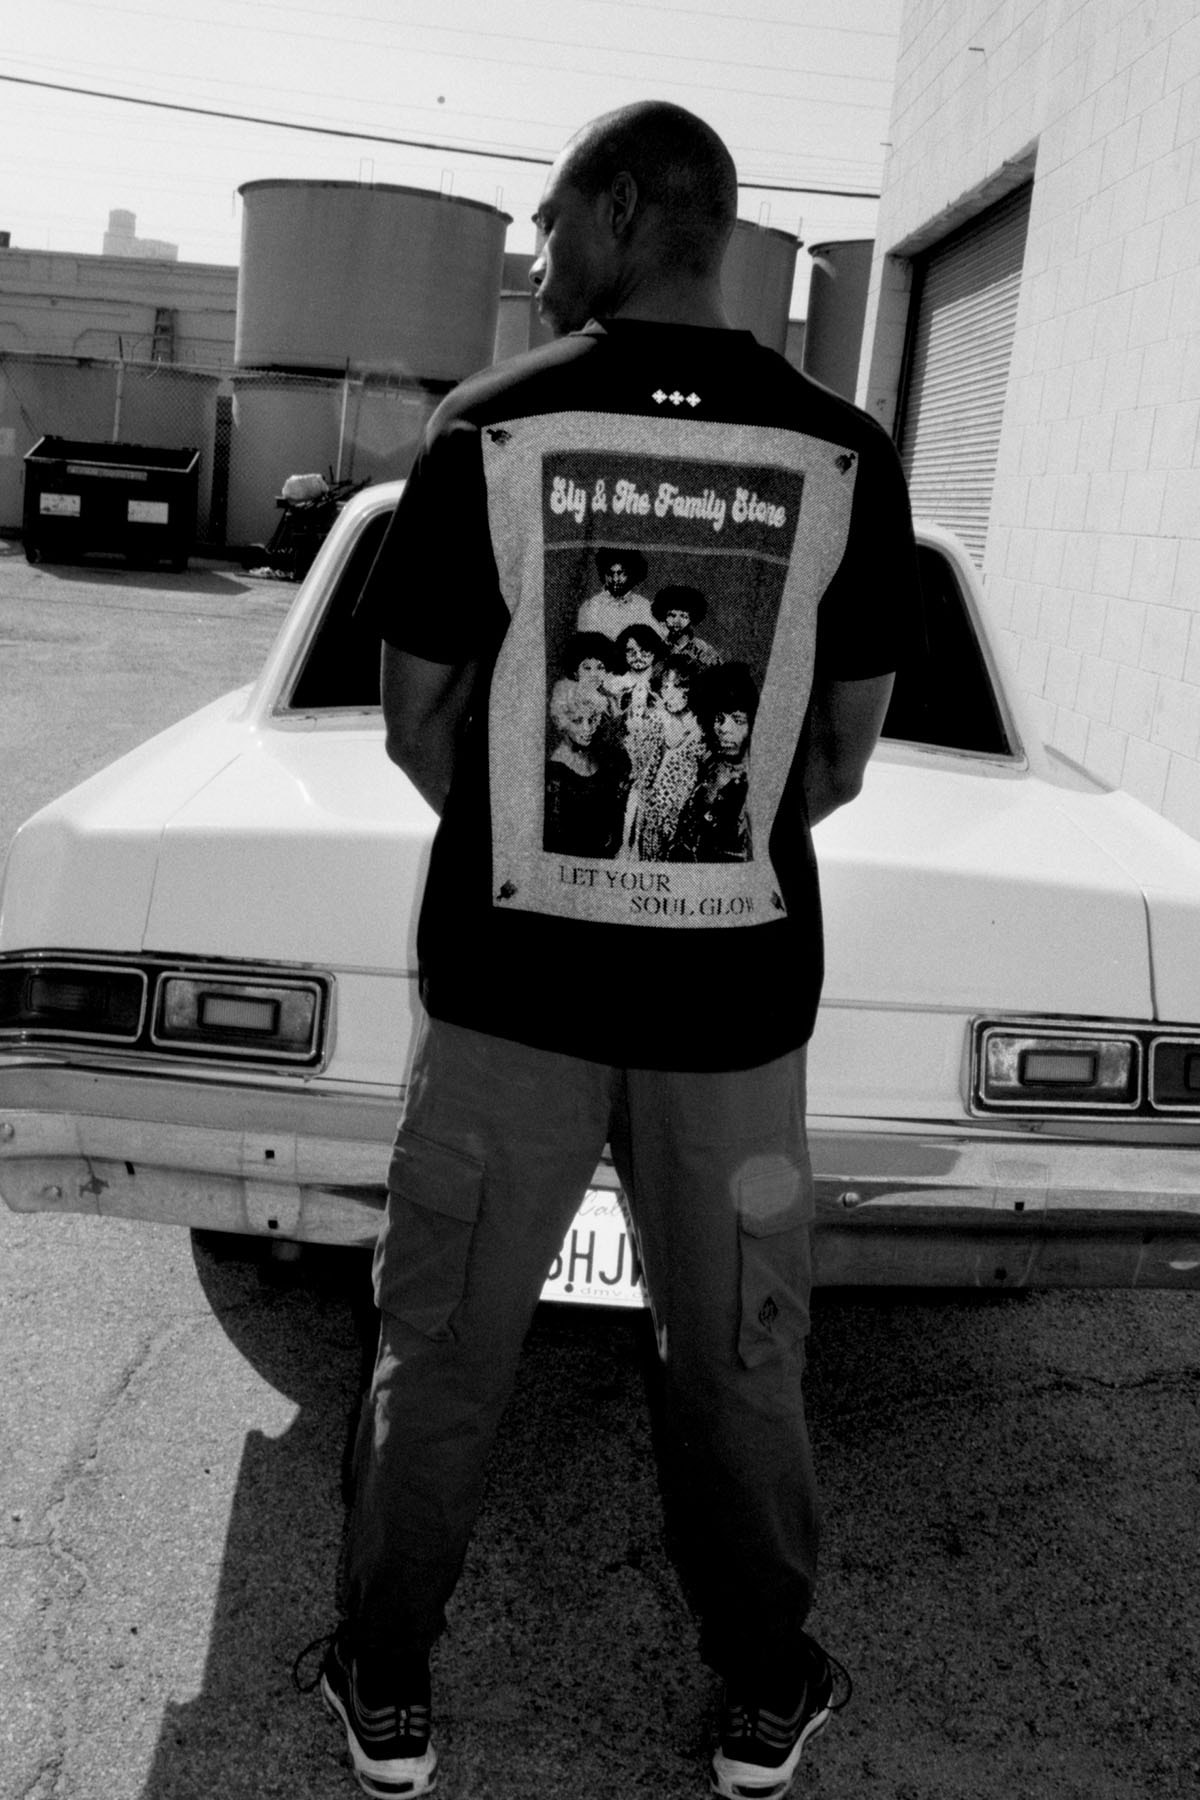 タトラスが 2Pacとスライ・アンド・ザ・ファミリー・ストーンとのコラボアイテムを発売 TATRAS 2Pac Sly & The Family Stone collab T-shirt Vinyl Motion record player turntable release info